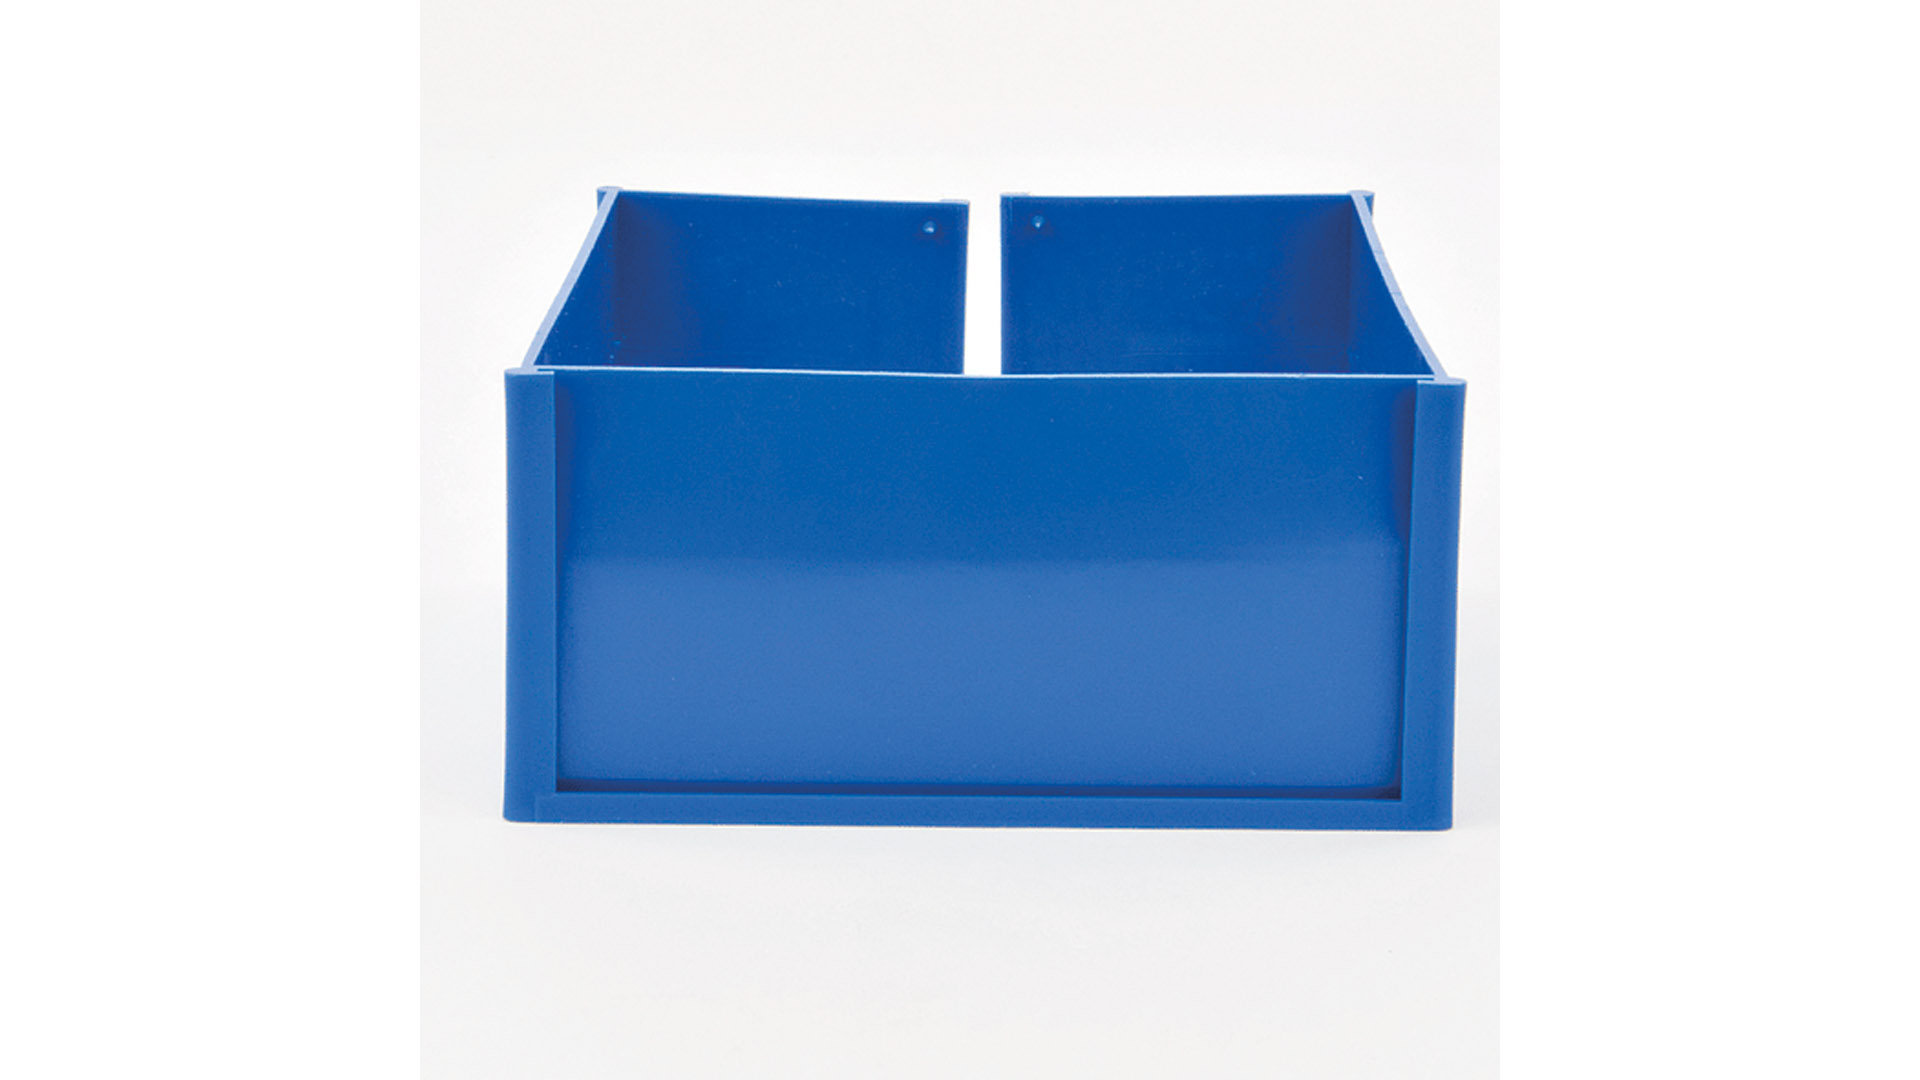 Paletten-ID-Spange, blau, für den Eckfuß der Palettenschmalseite, BxTxH 113x156x73 mm, VE 25 Stück